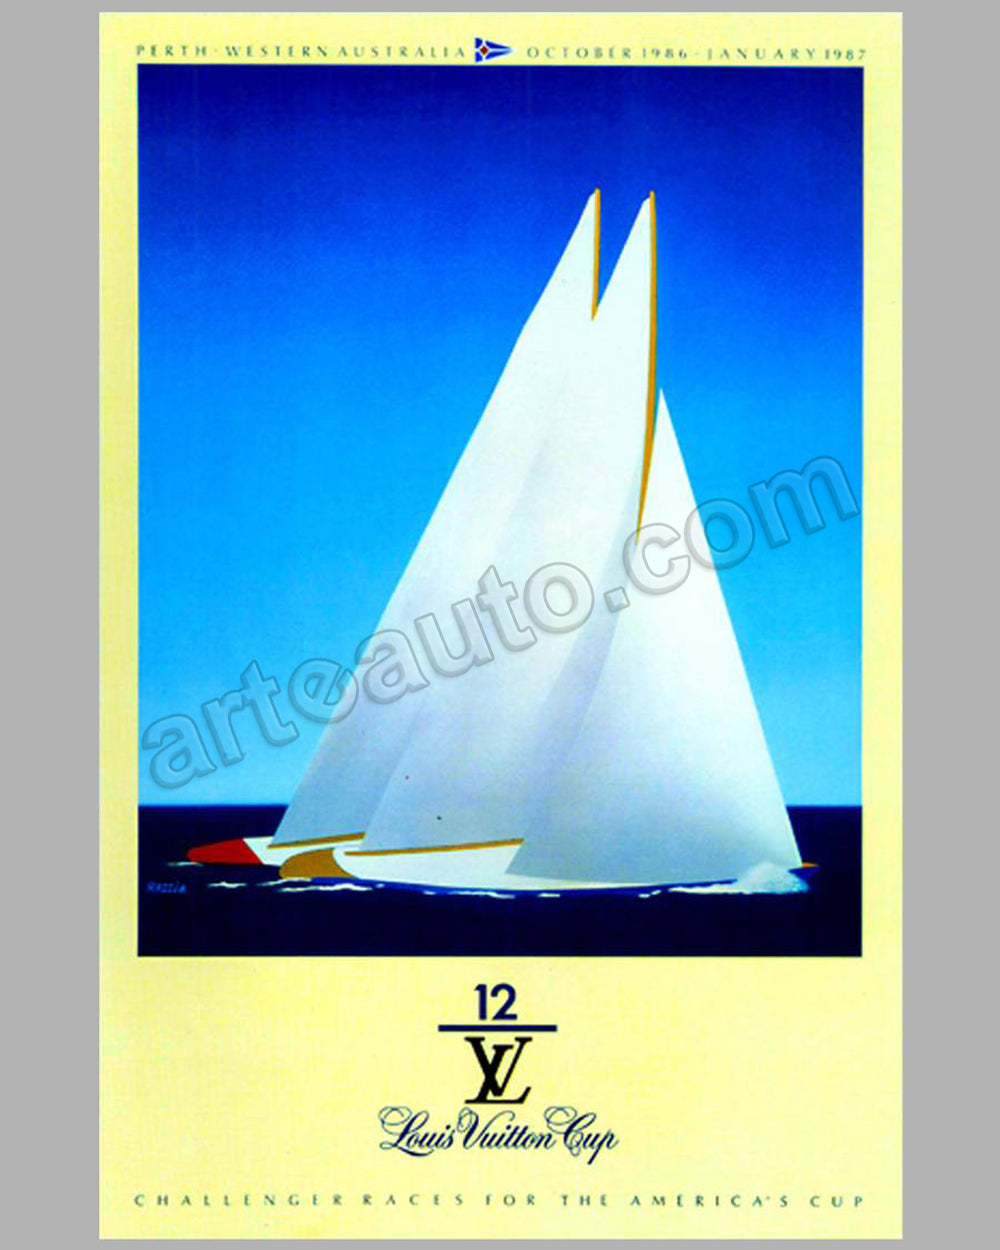 Louis Vuitton Classic St Cloud 2003 36 x29 poster by Razzia - l